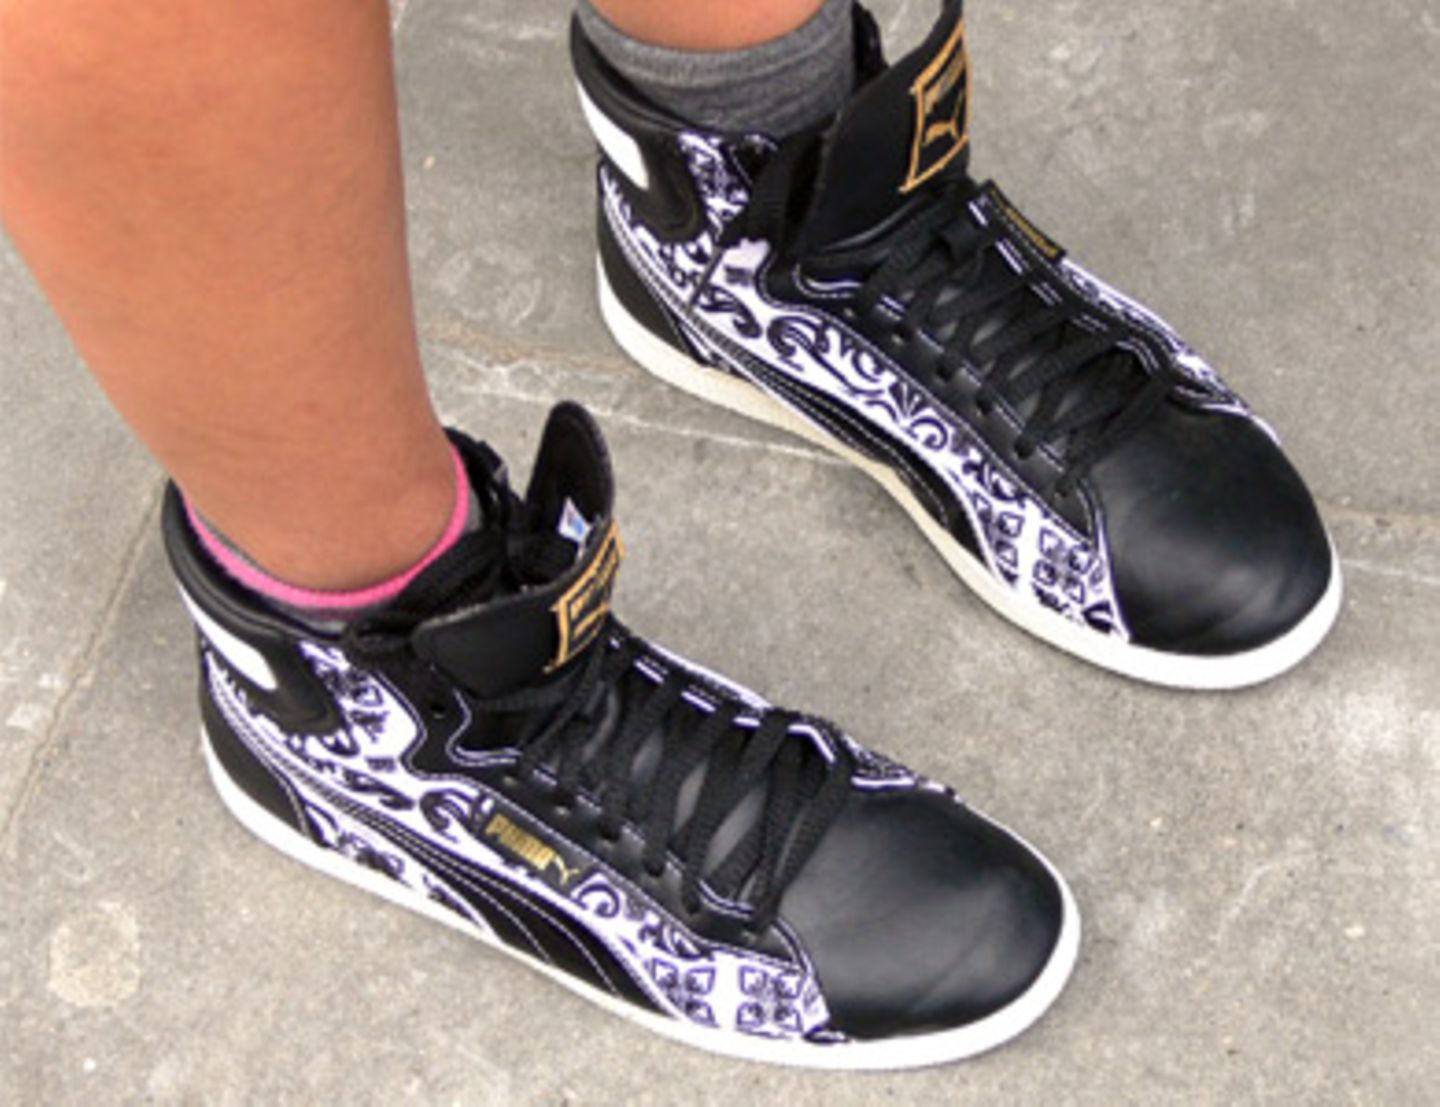 Sportlich schön sind diese tollen Turnschuhe von Oona, 15, die ihre Puma-Schuhe mit zweifarbigen Socken trägt. Zu 100 Prozent stilsicher.